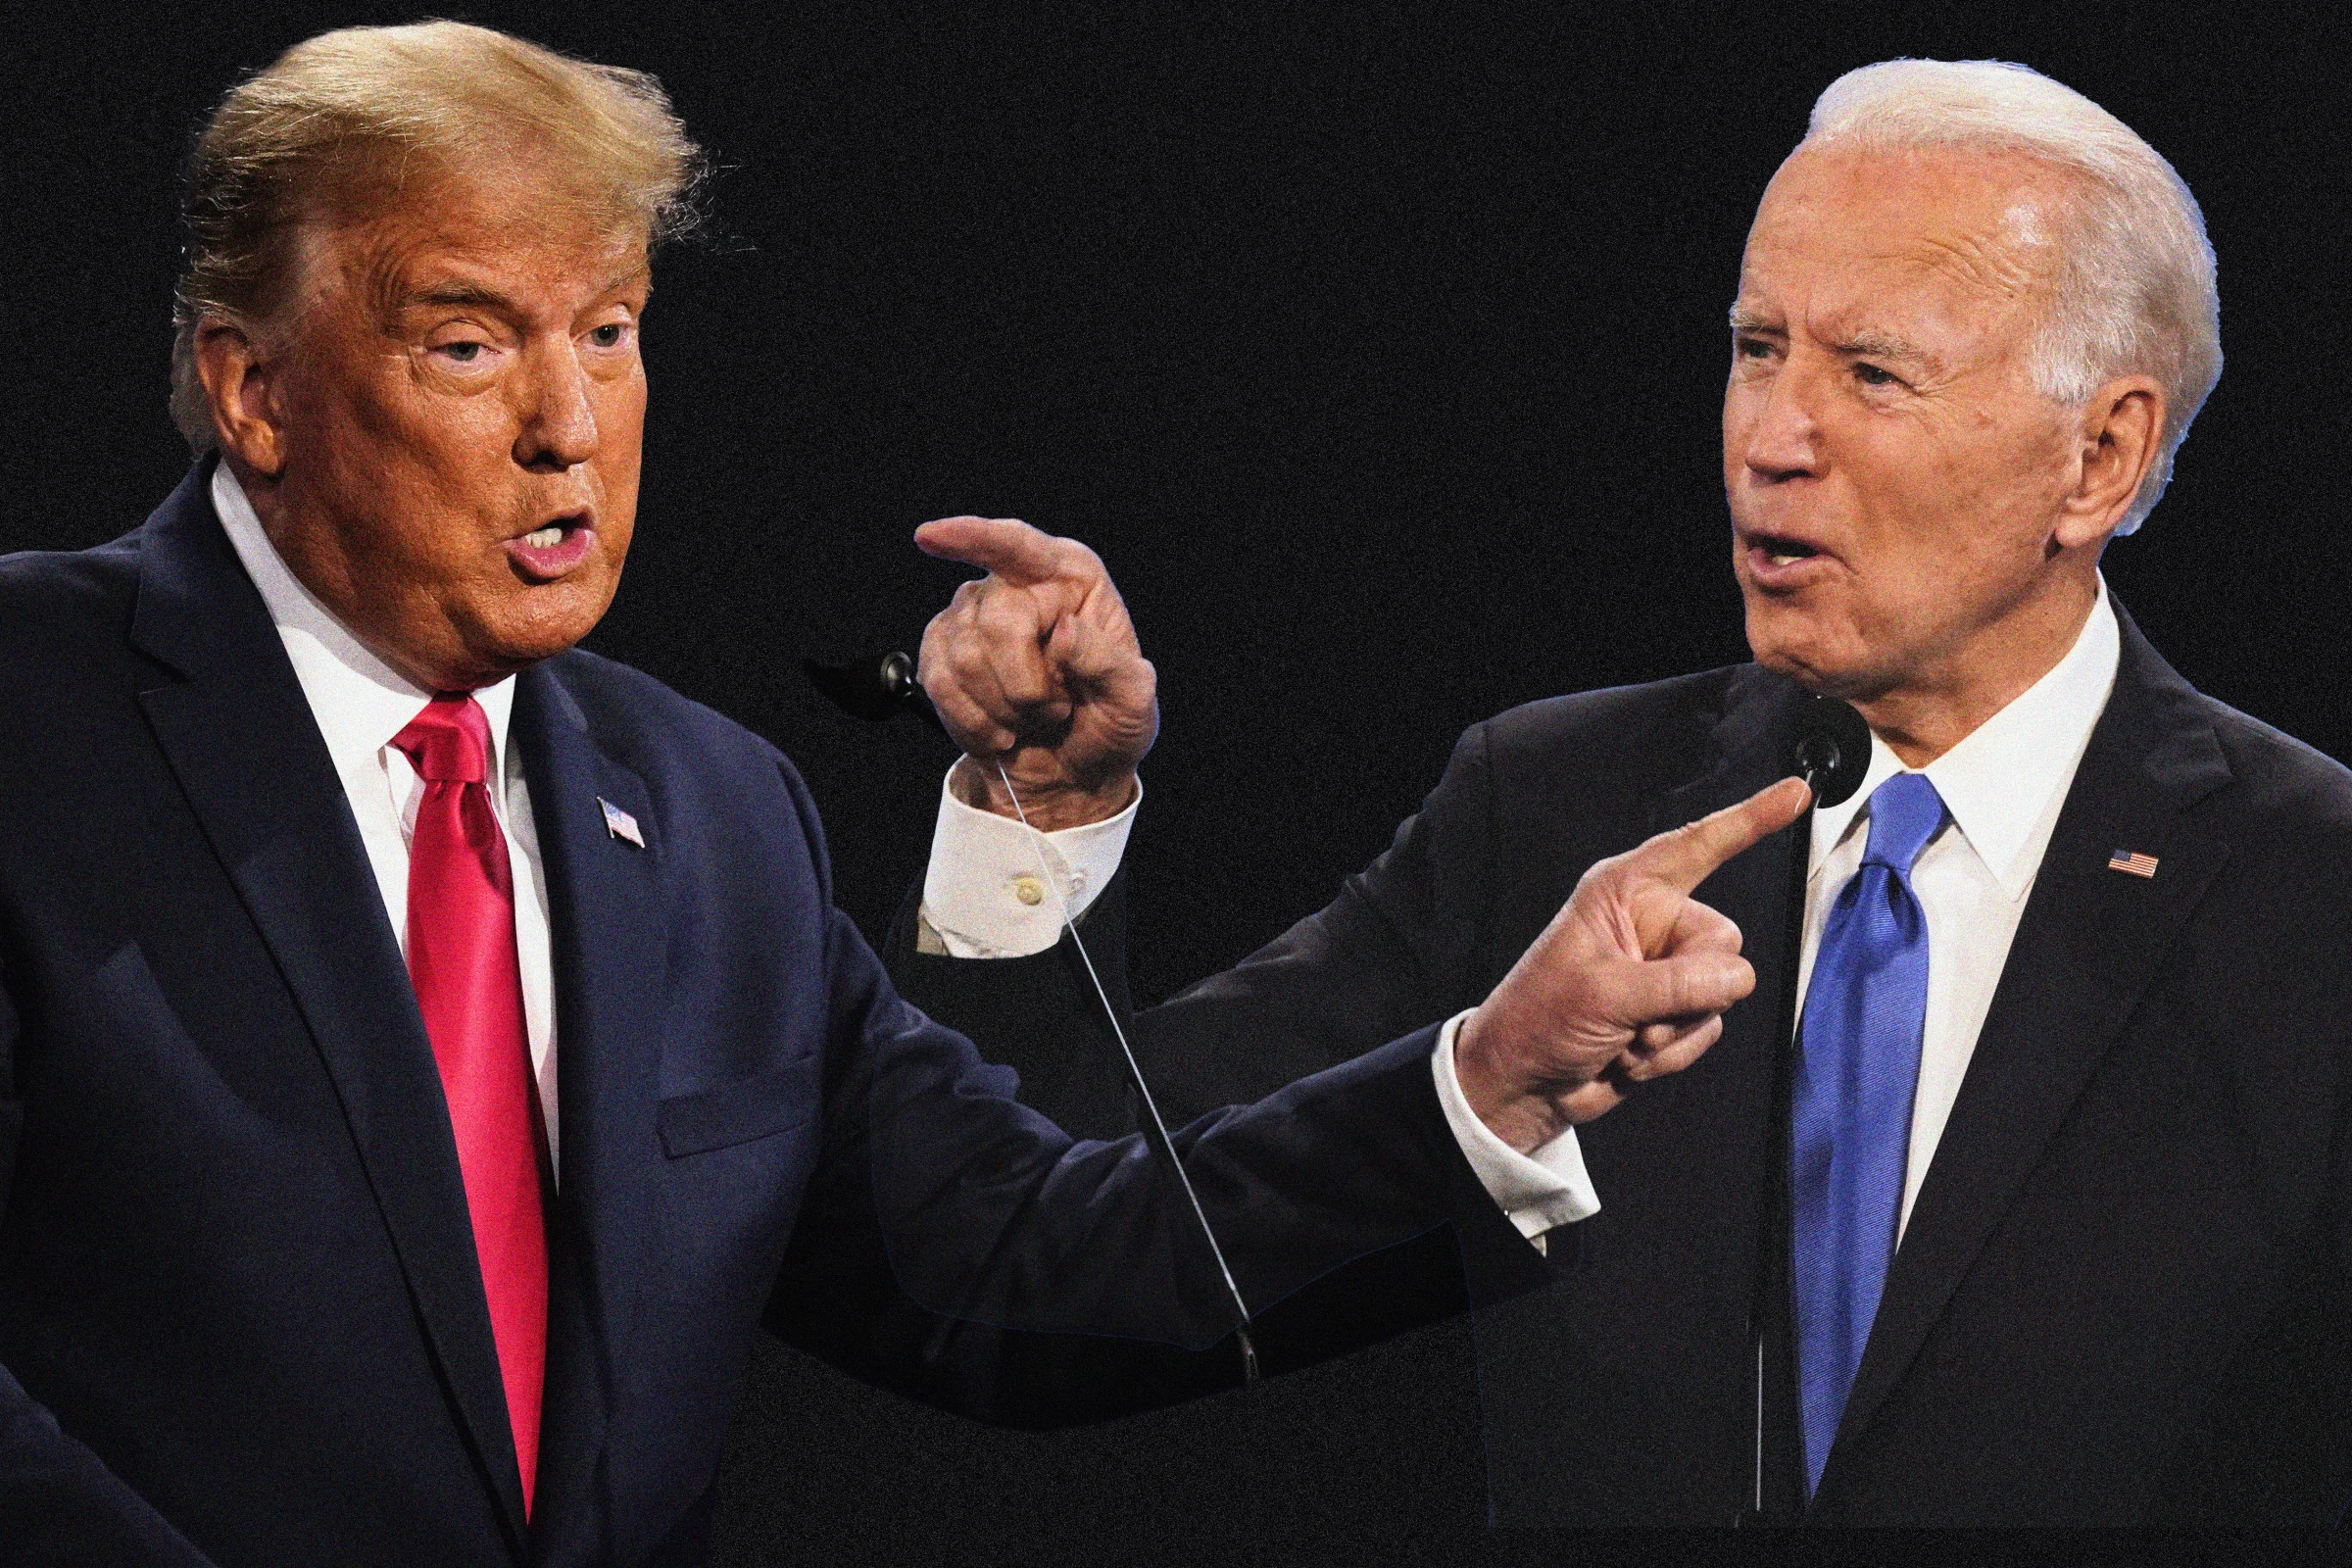 Biden and Trump to debate